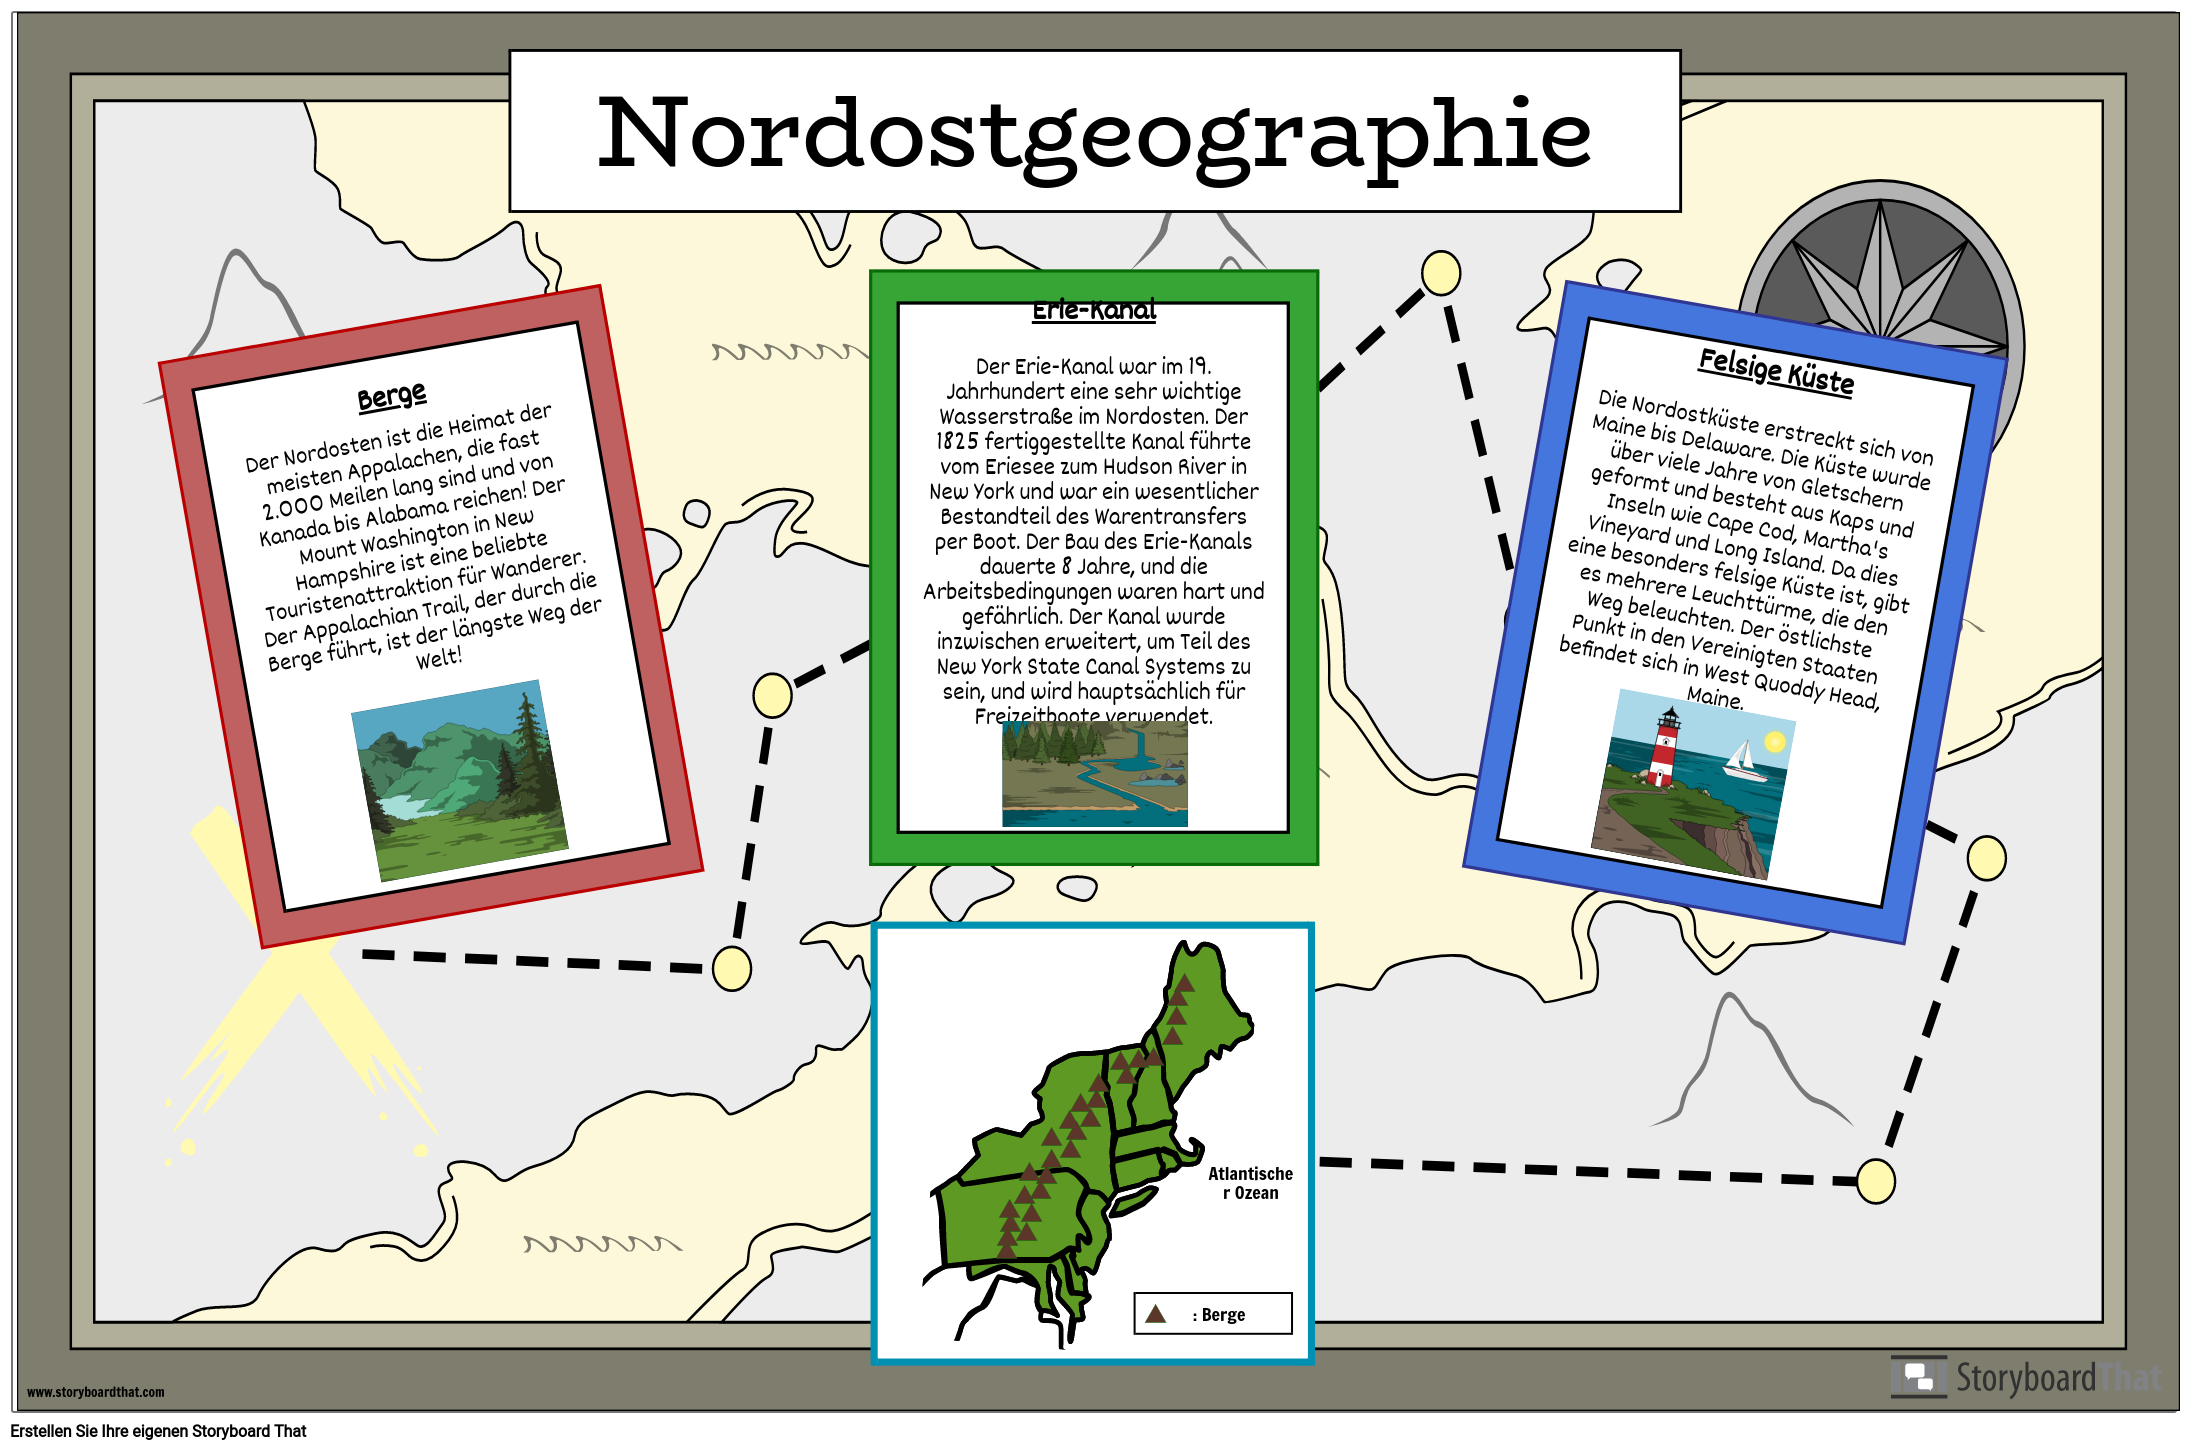 Nordostgeographie